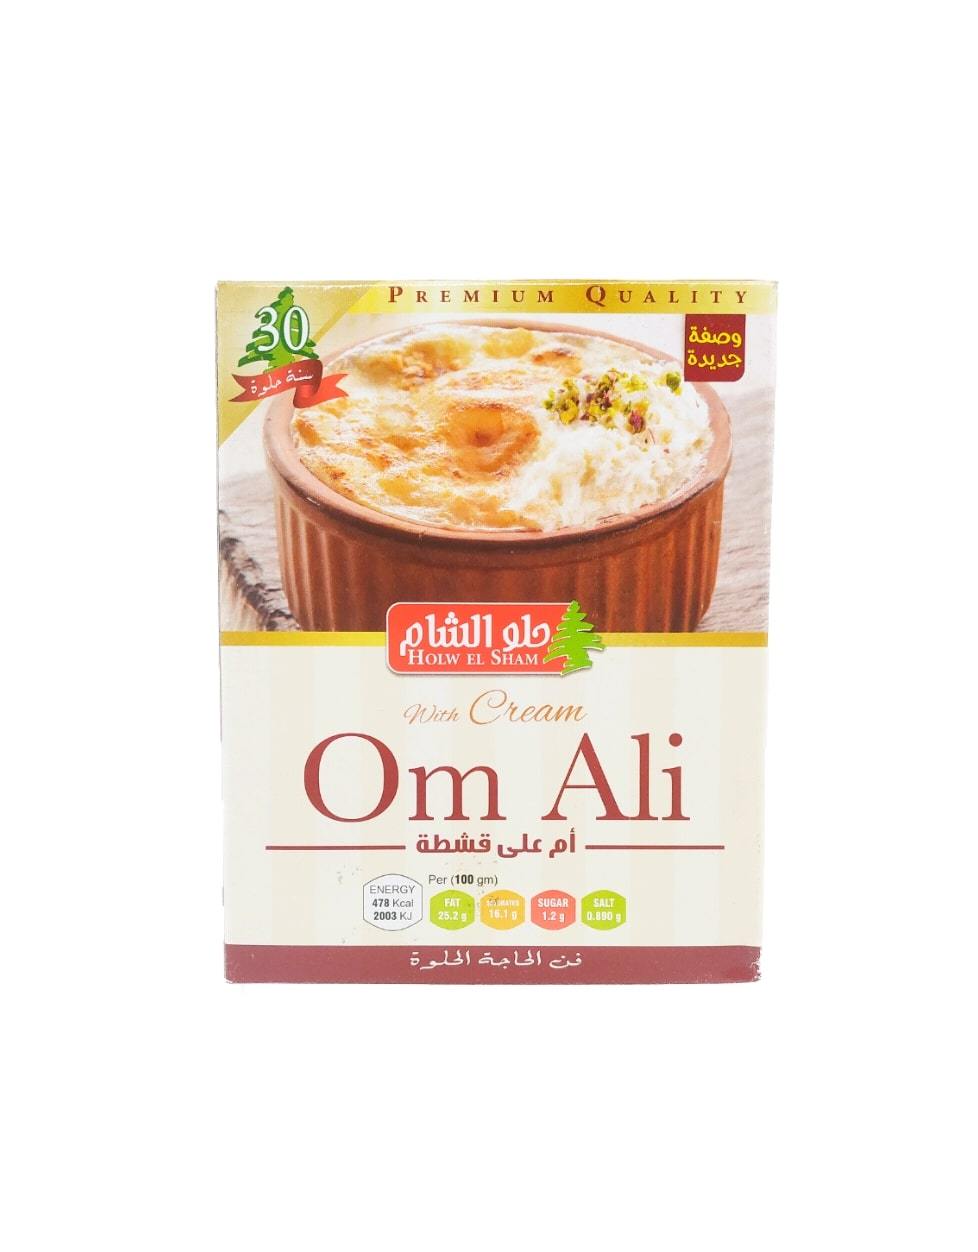 Produits orientaux en ligne : Holw el sham - Om Ali with cream